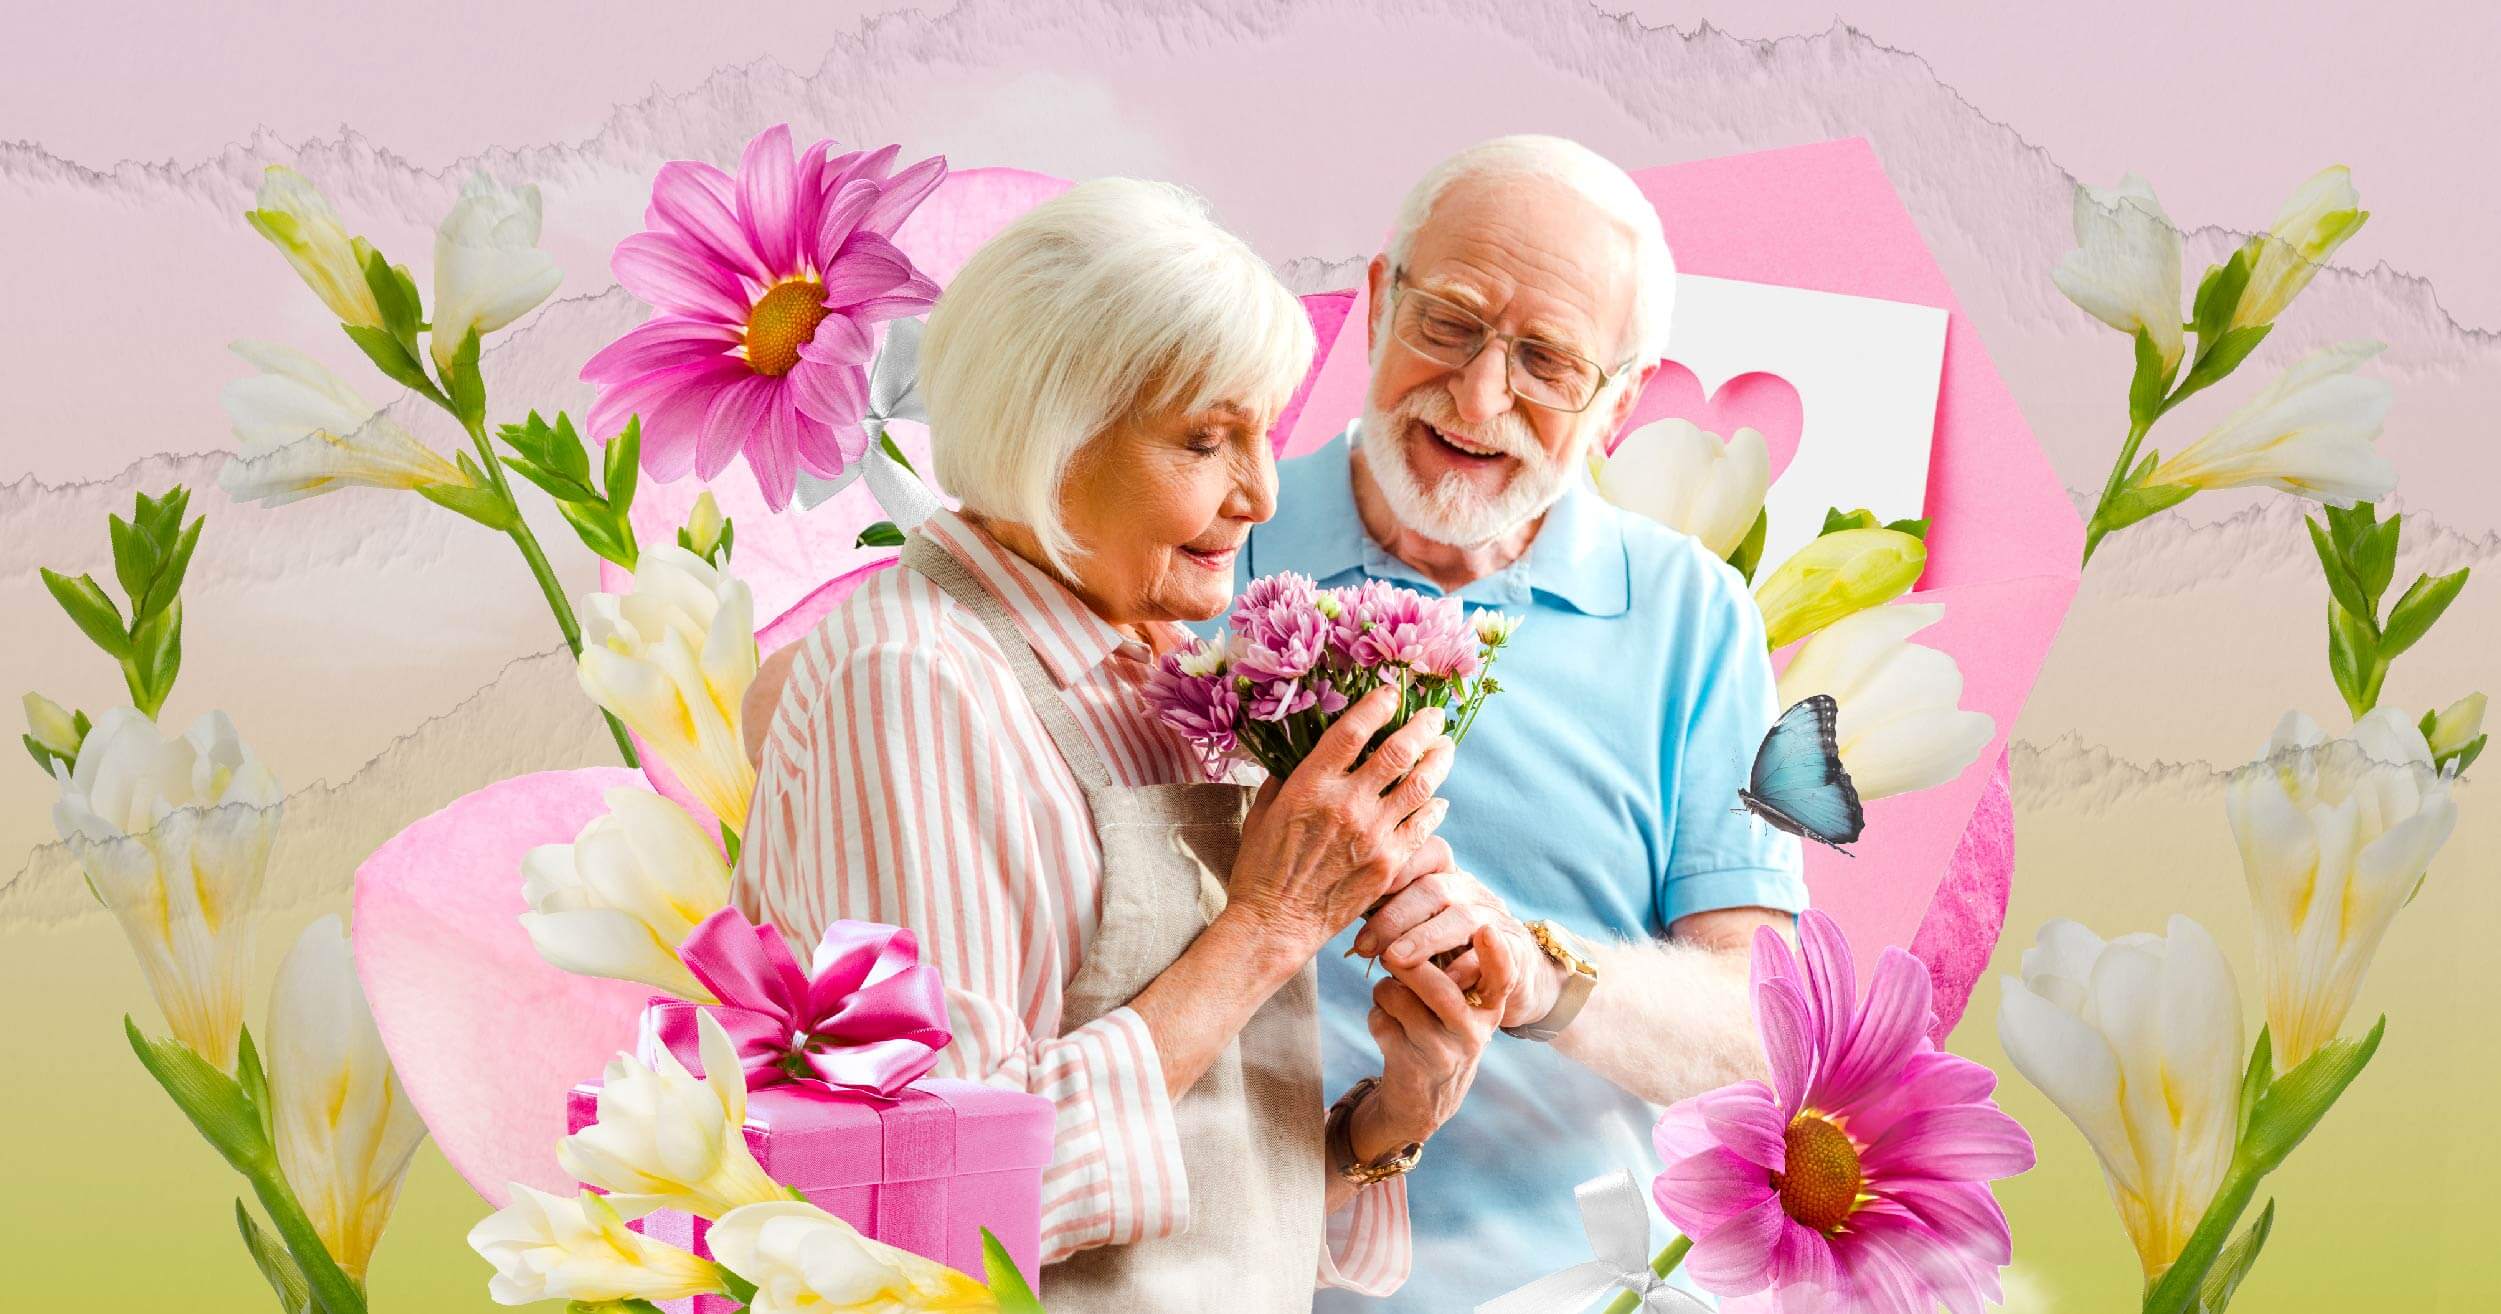 การให้ดอกไม้หรือของเล็กๆ น้อยๆ กับคนรักมีความสำคัญต่อความสัมพันธ์ ความรัก สุขภาพจิต